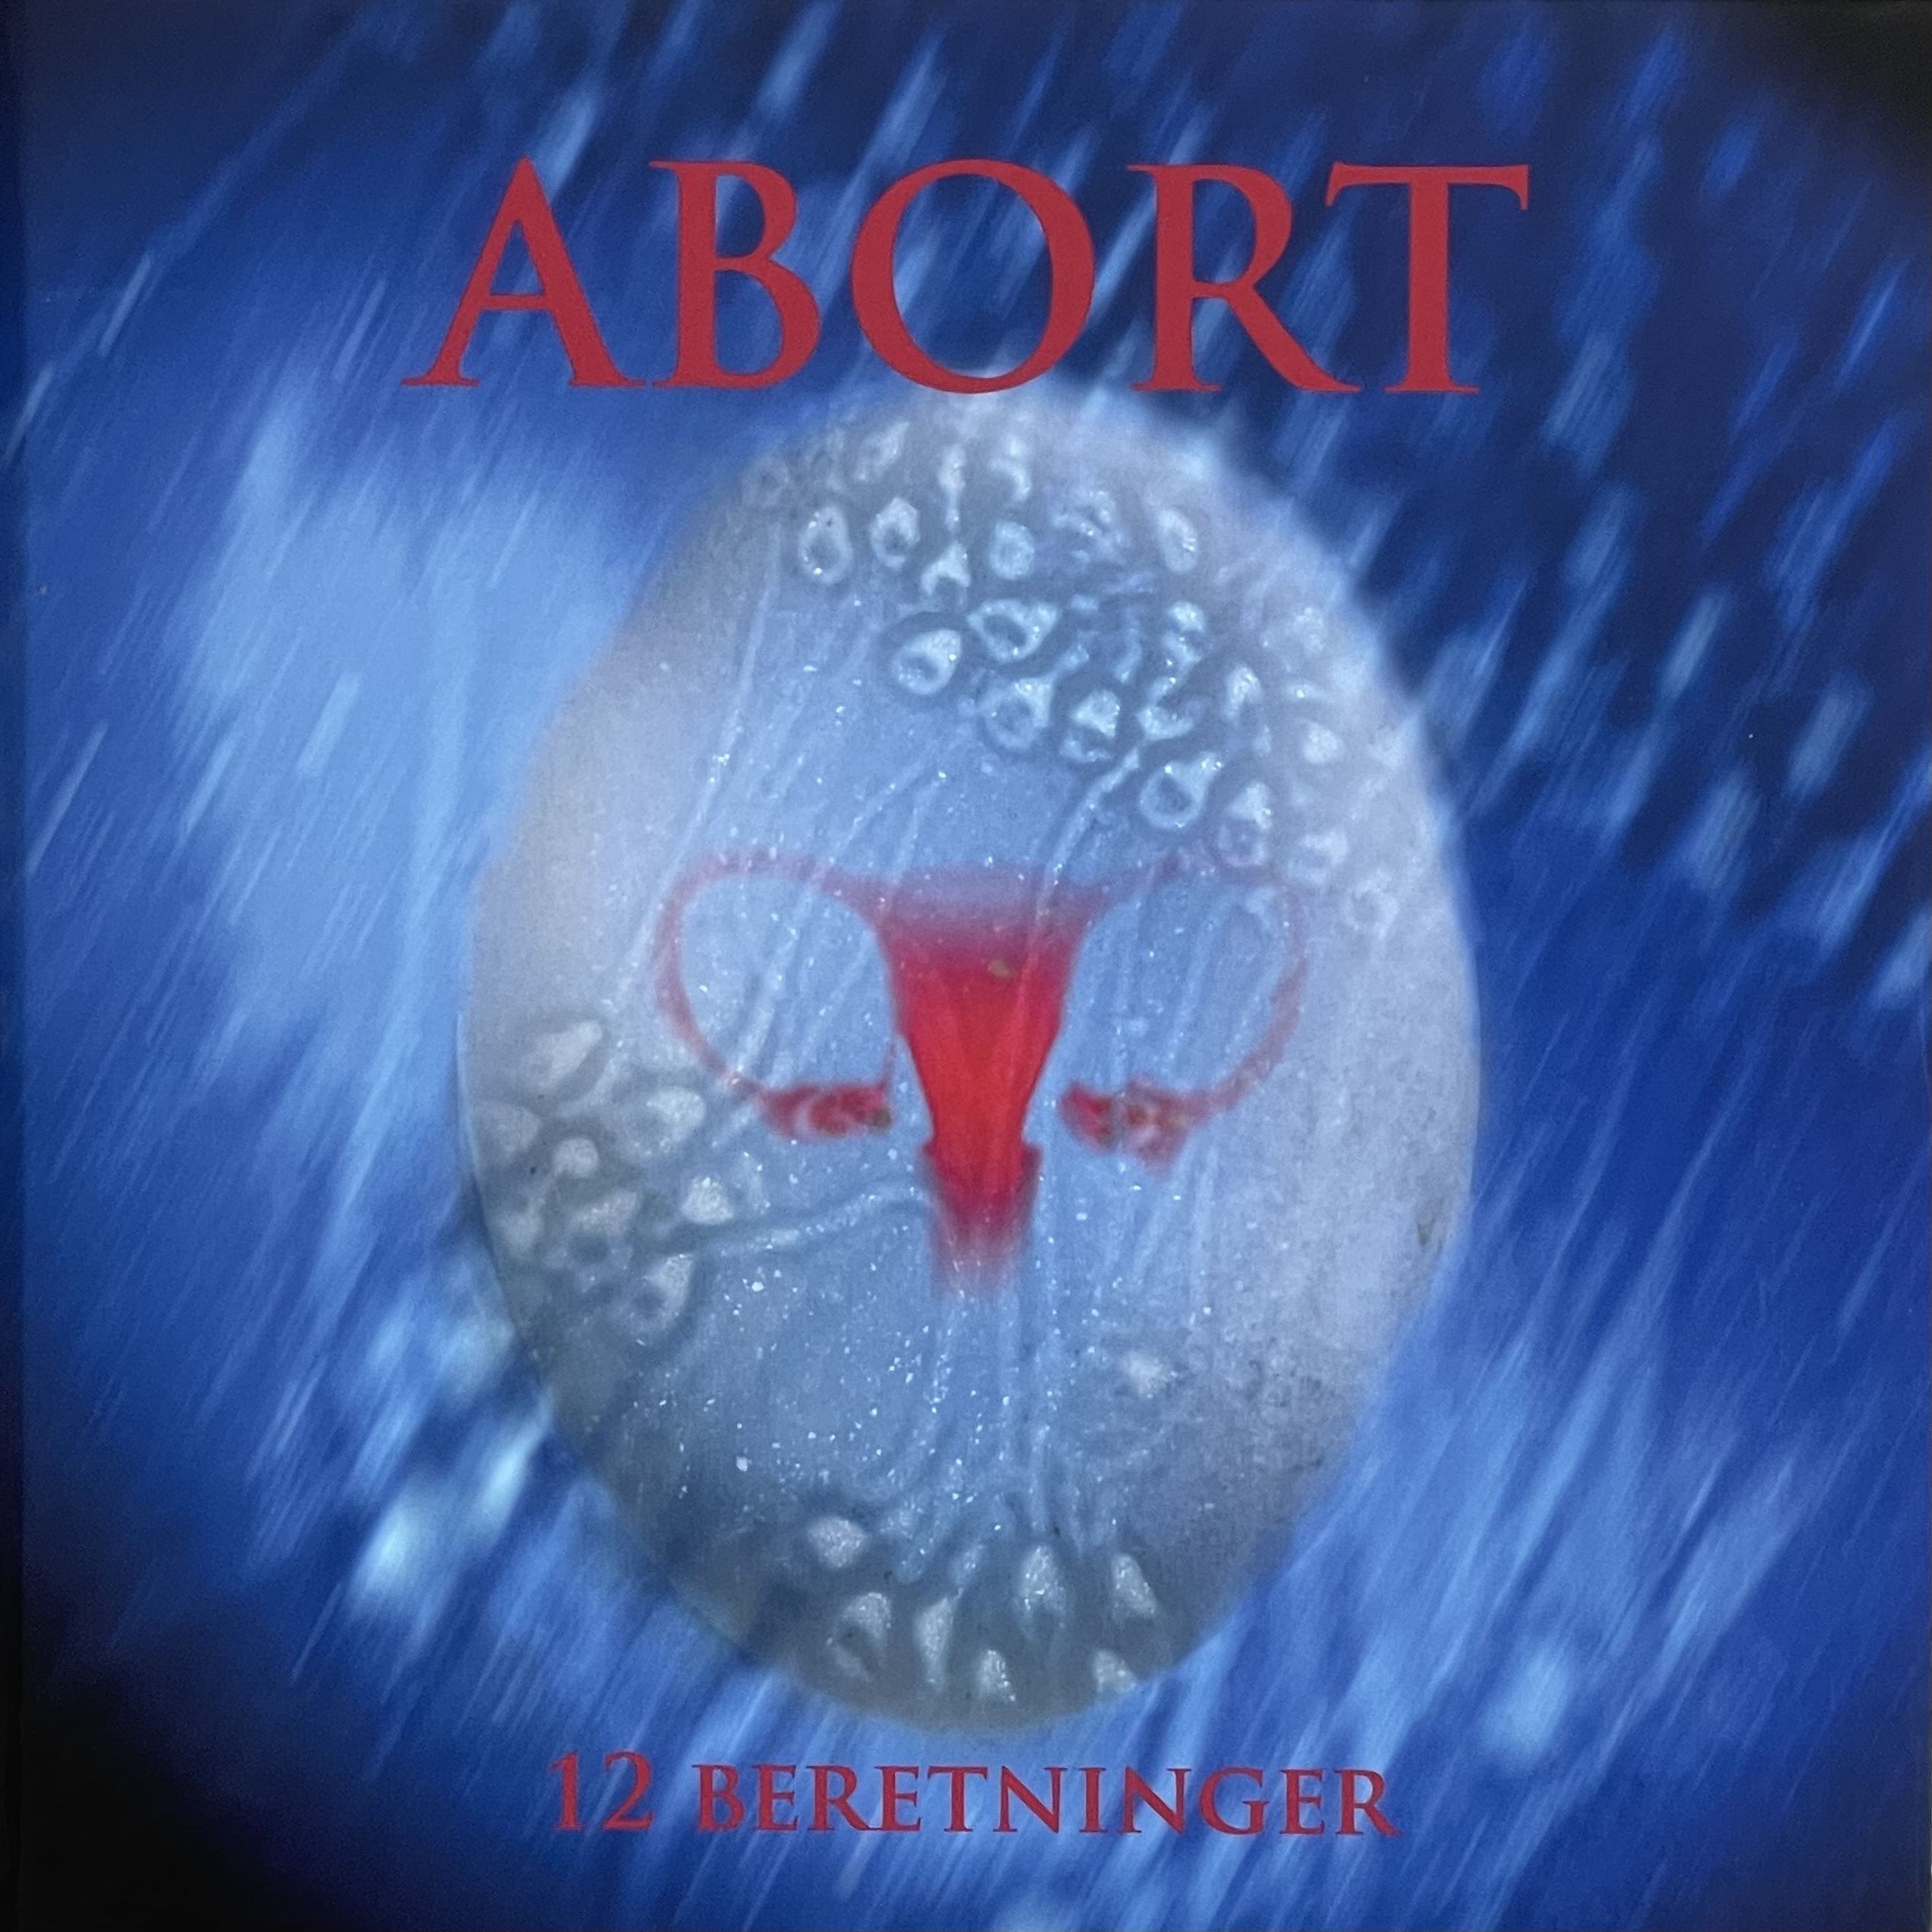 Abort – kan, kan ikke, skal skal ikke? – 12 beretninger.